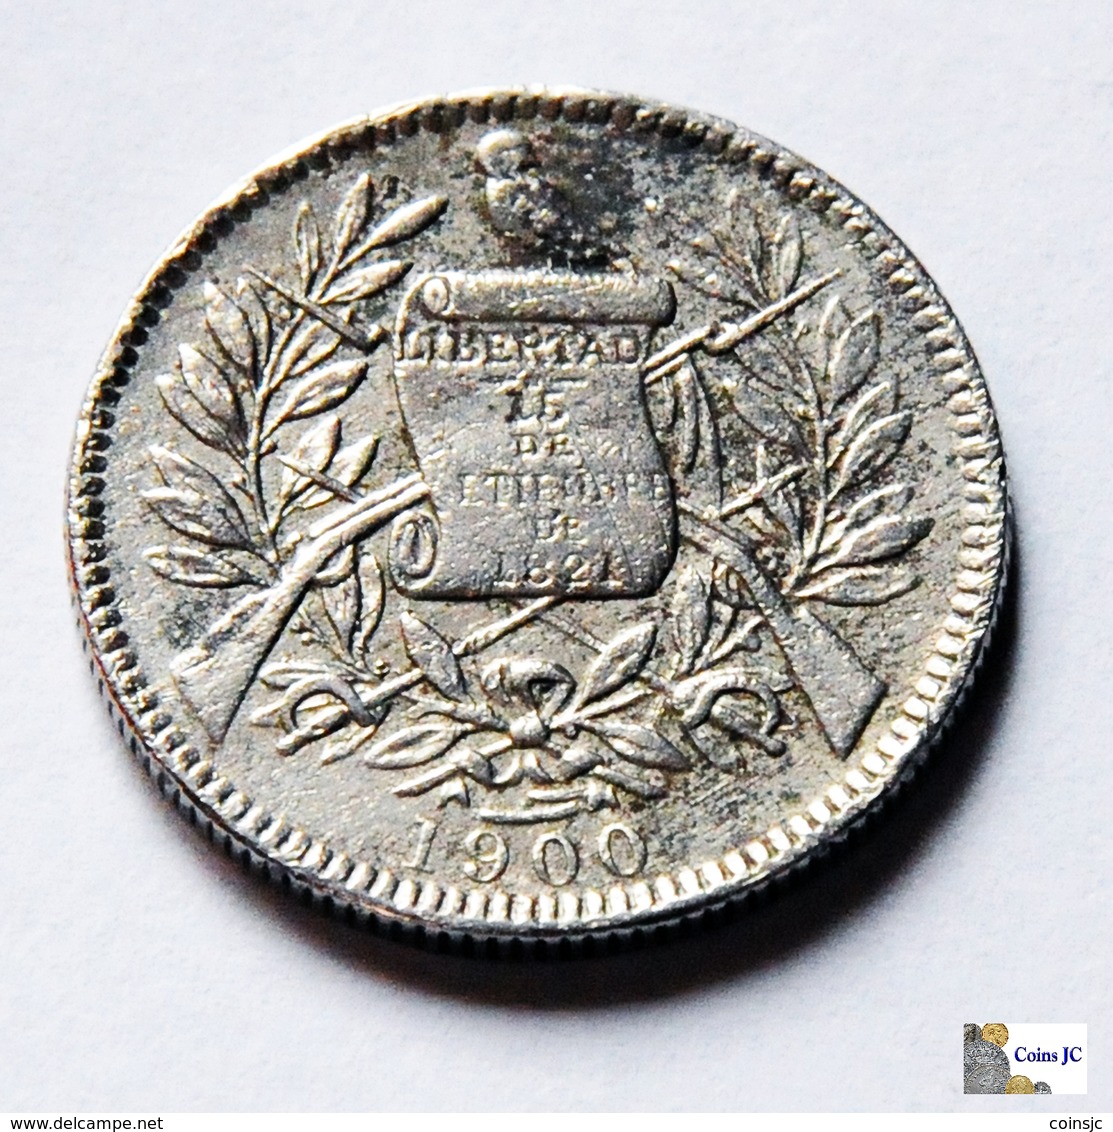 Guatemala - 1 Real - 1900 - Guatemala